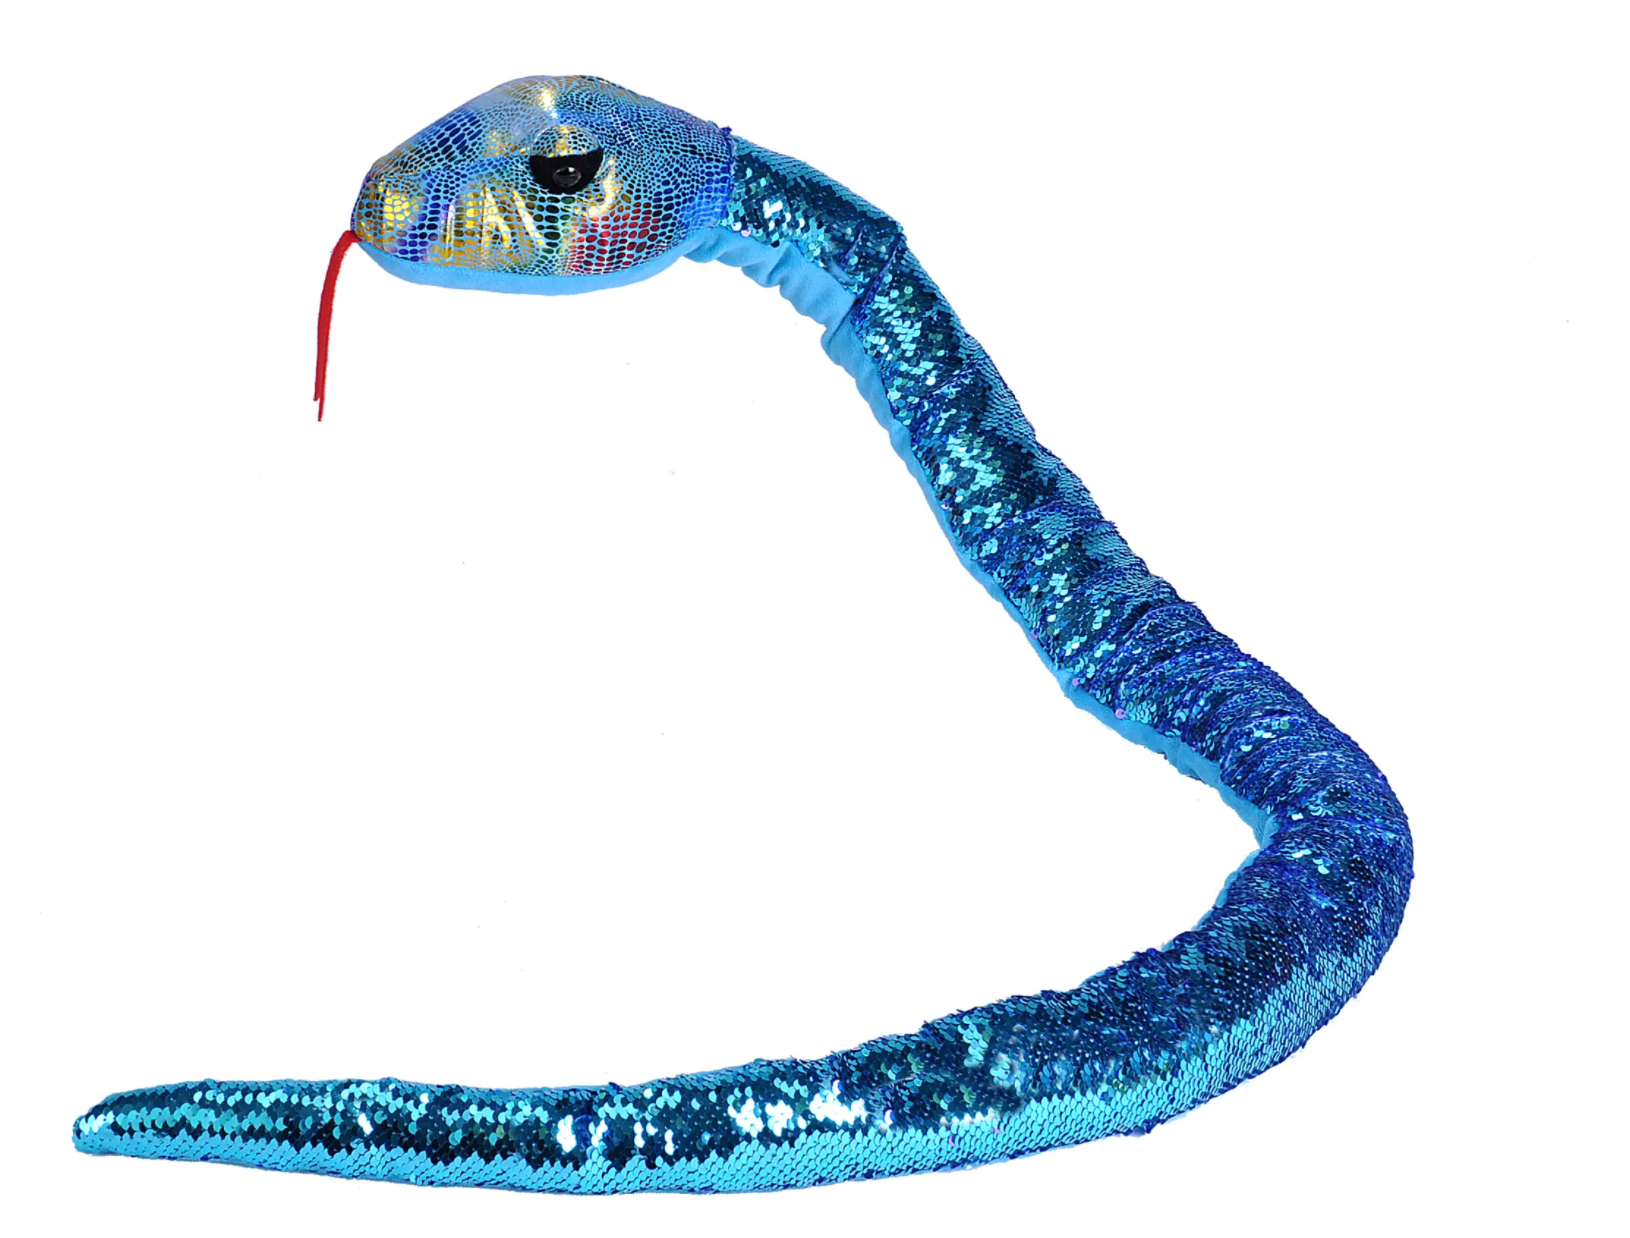 Sequin Snake Stuffed Animal - 54" (Teal/Purple)